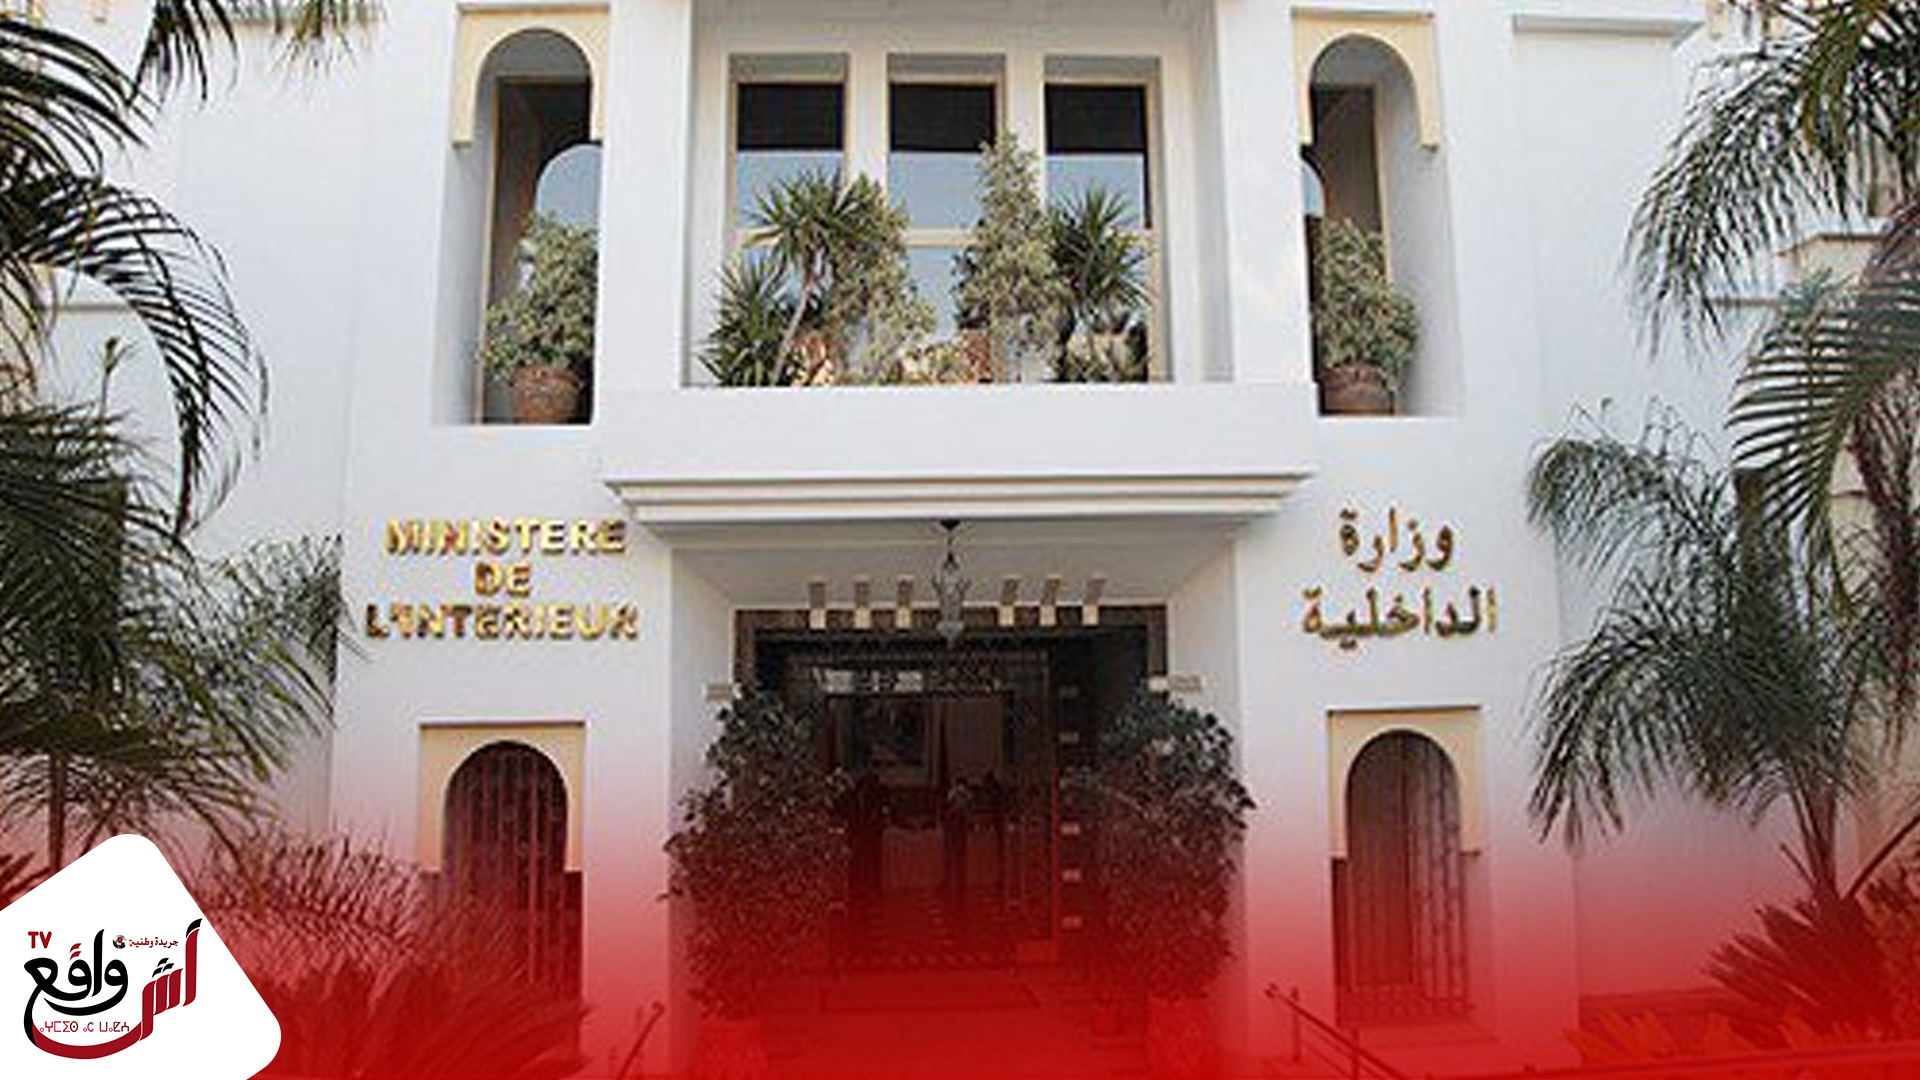 إعفاء عامل عمالة مقاطعات الدار البيضاء أنفا من مهامه